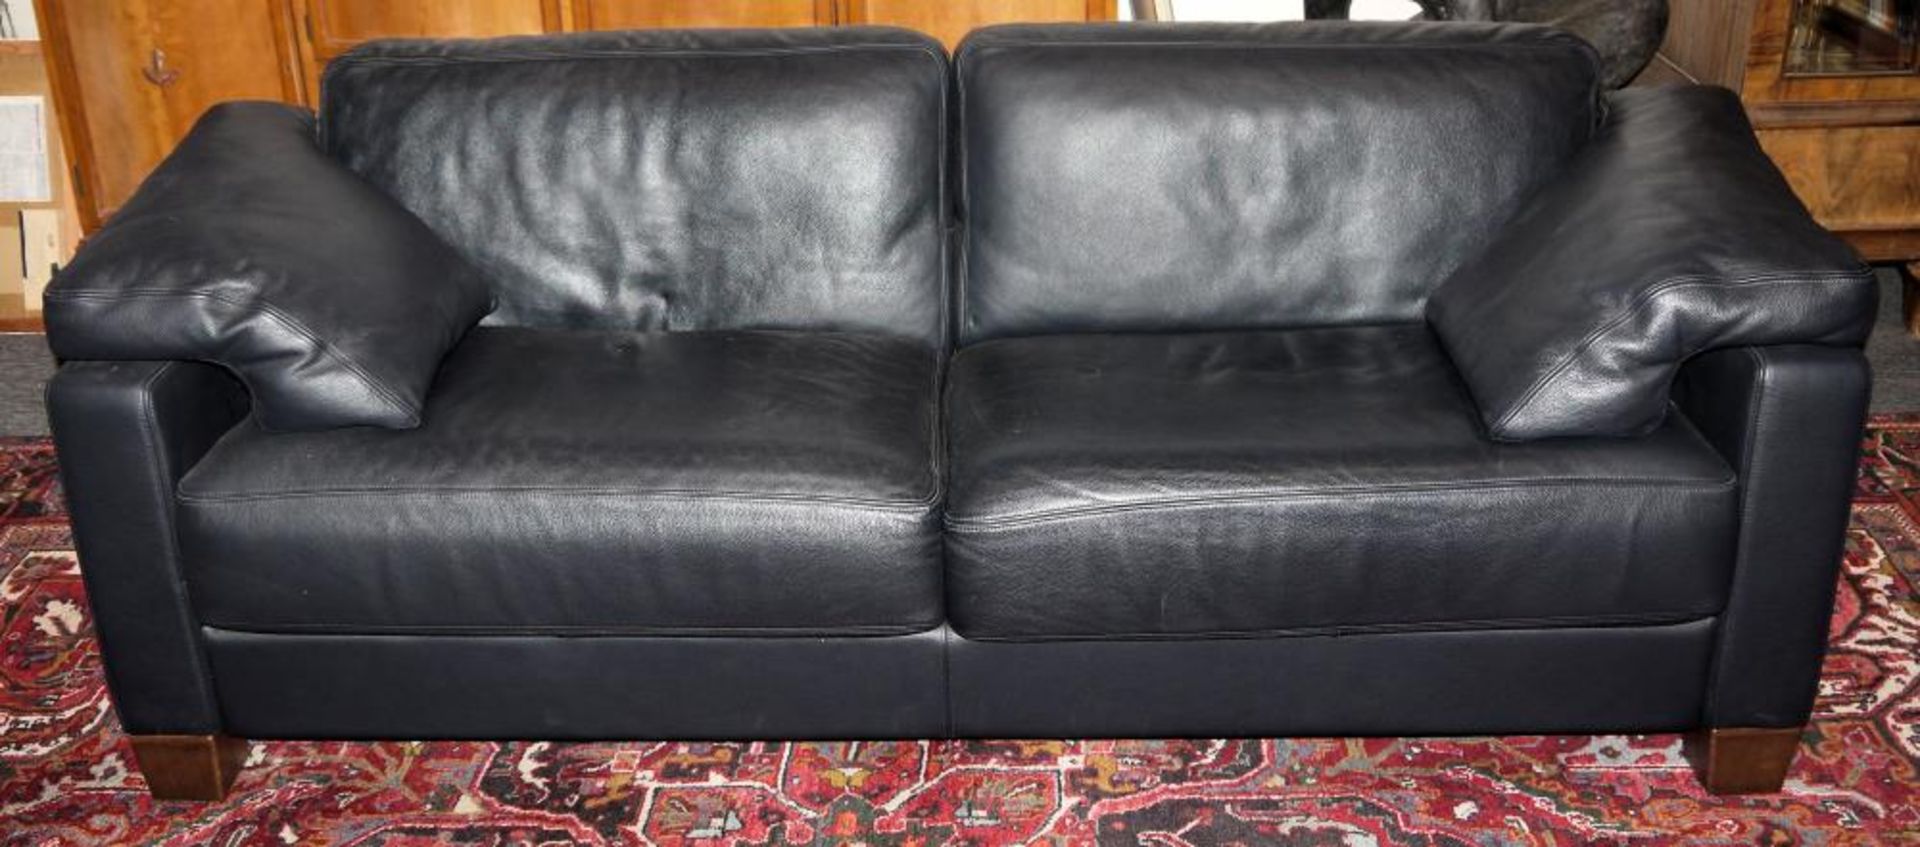 Hochwertige Ledercouch & Sessel von WK-Möbel Dreisitzer und Sessel in schwarzem Leder, sehr gute